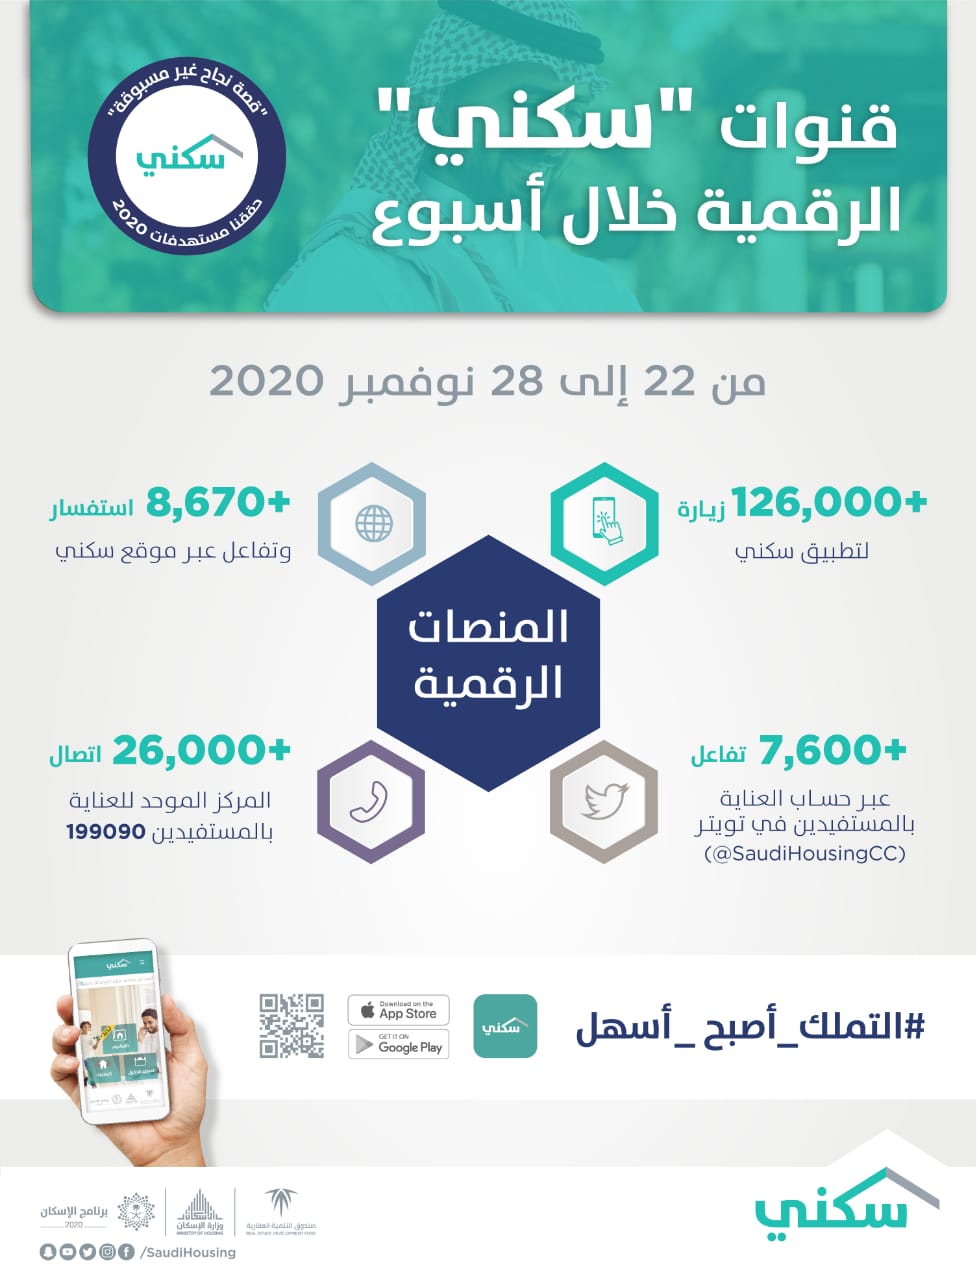 منصّات "سكني" الرقميّة تواصل تقديم خدماتها الإلكترونية لتسهيل تملك الأسر السعودية